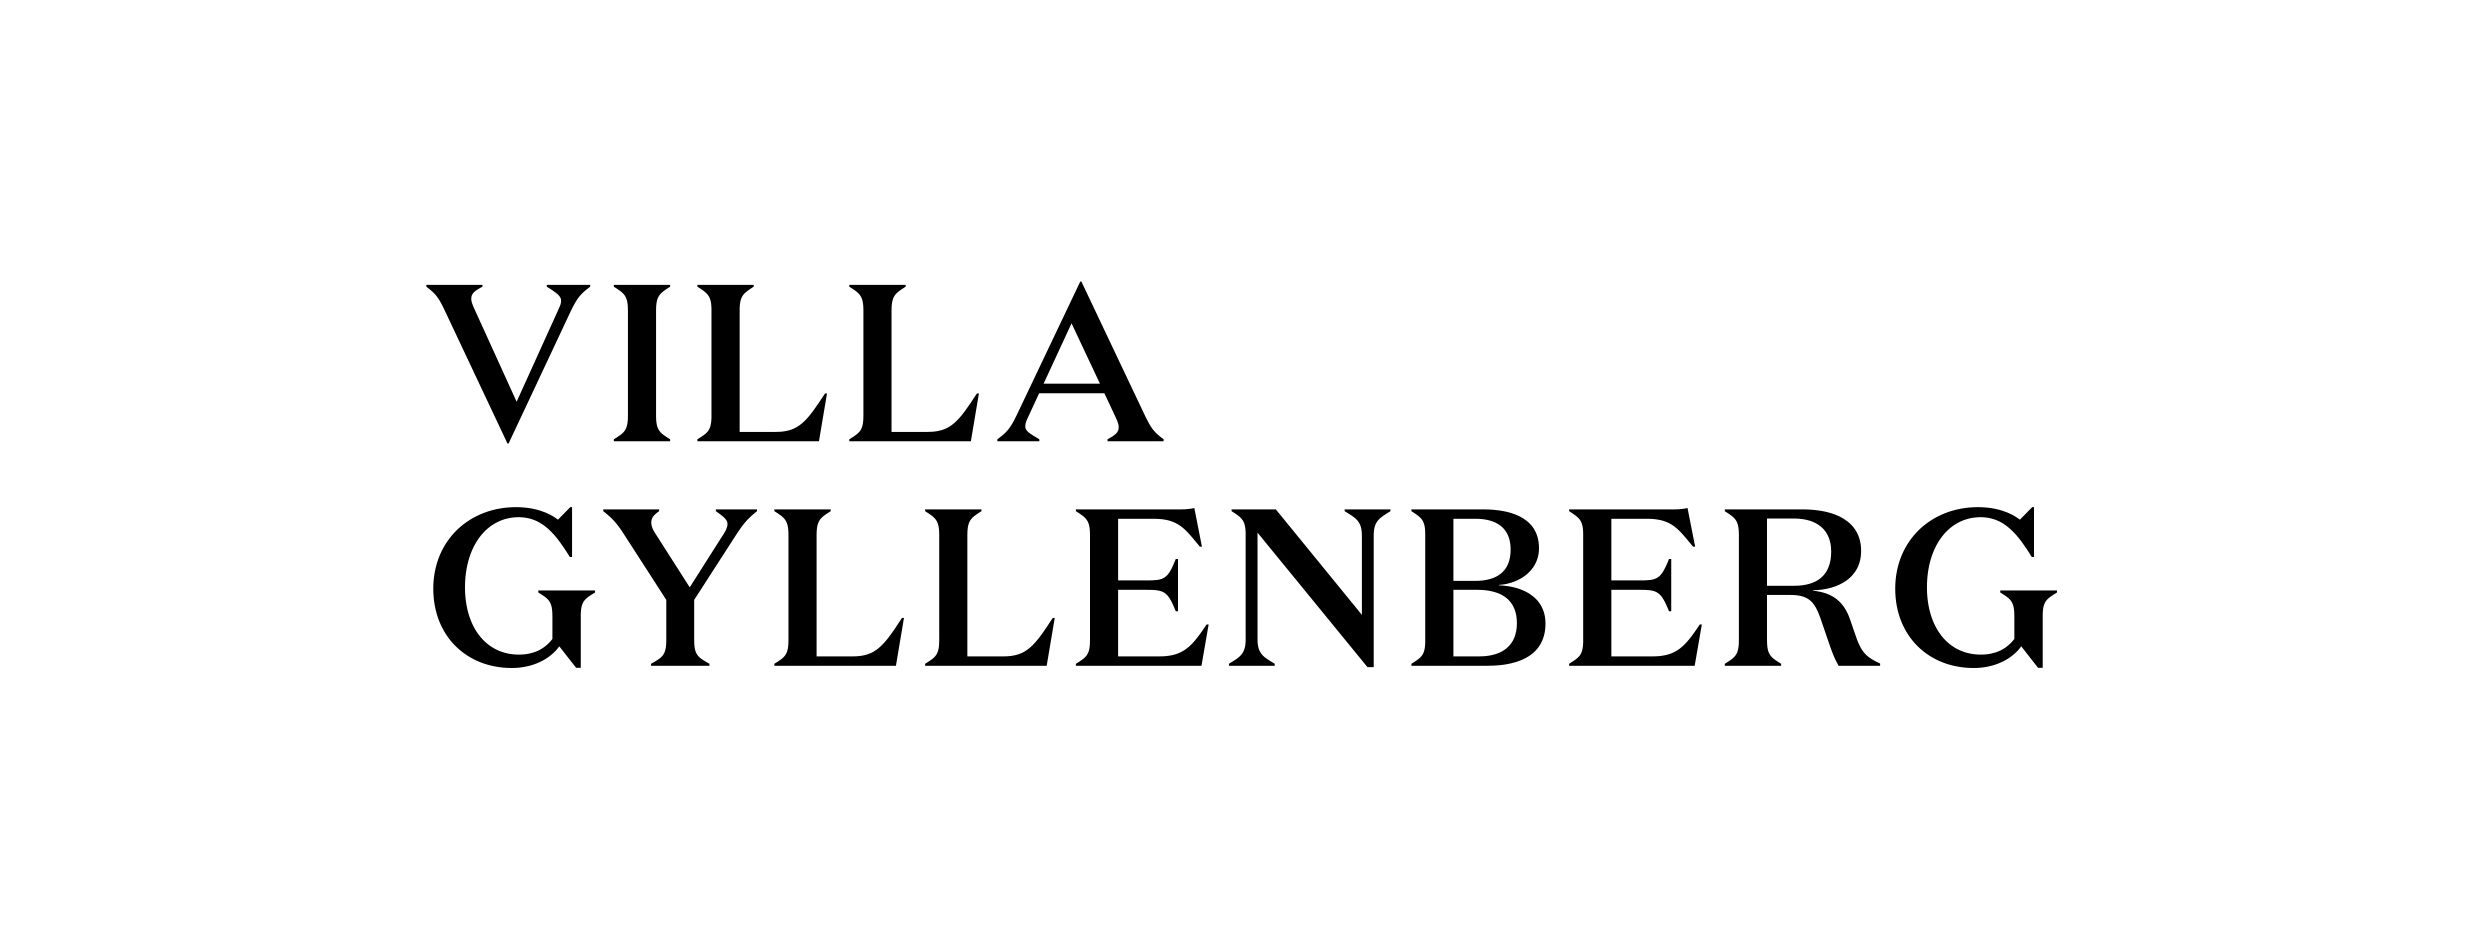 villagyllenberg_logotype_leftaligned_RGB_black | Villa Gyllenberg